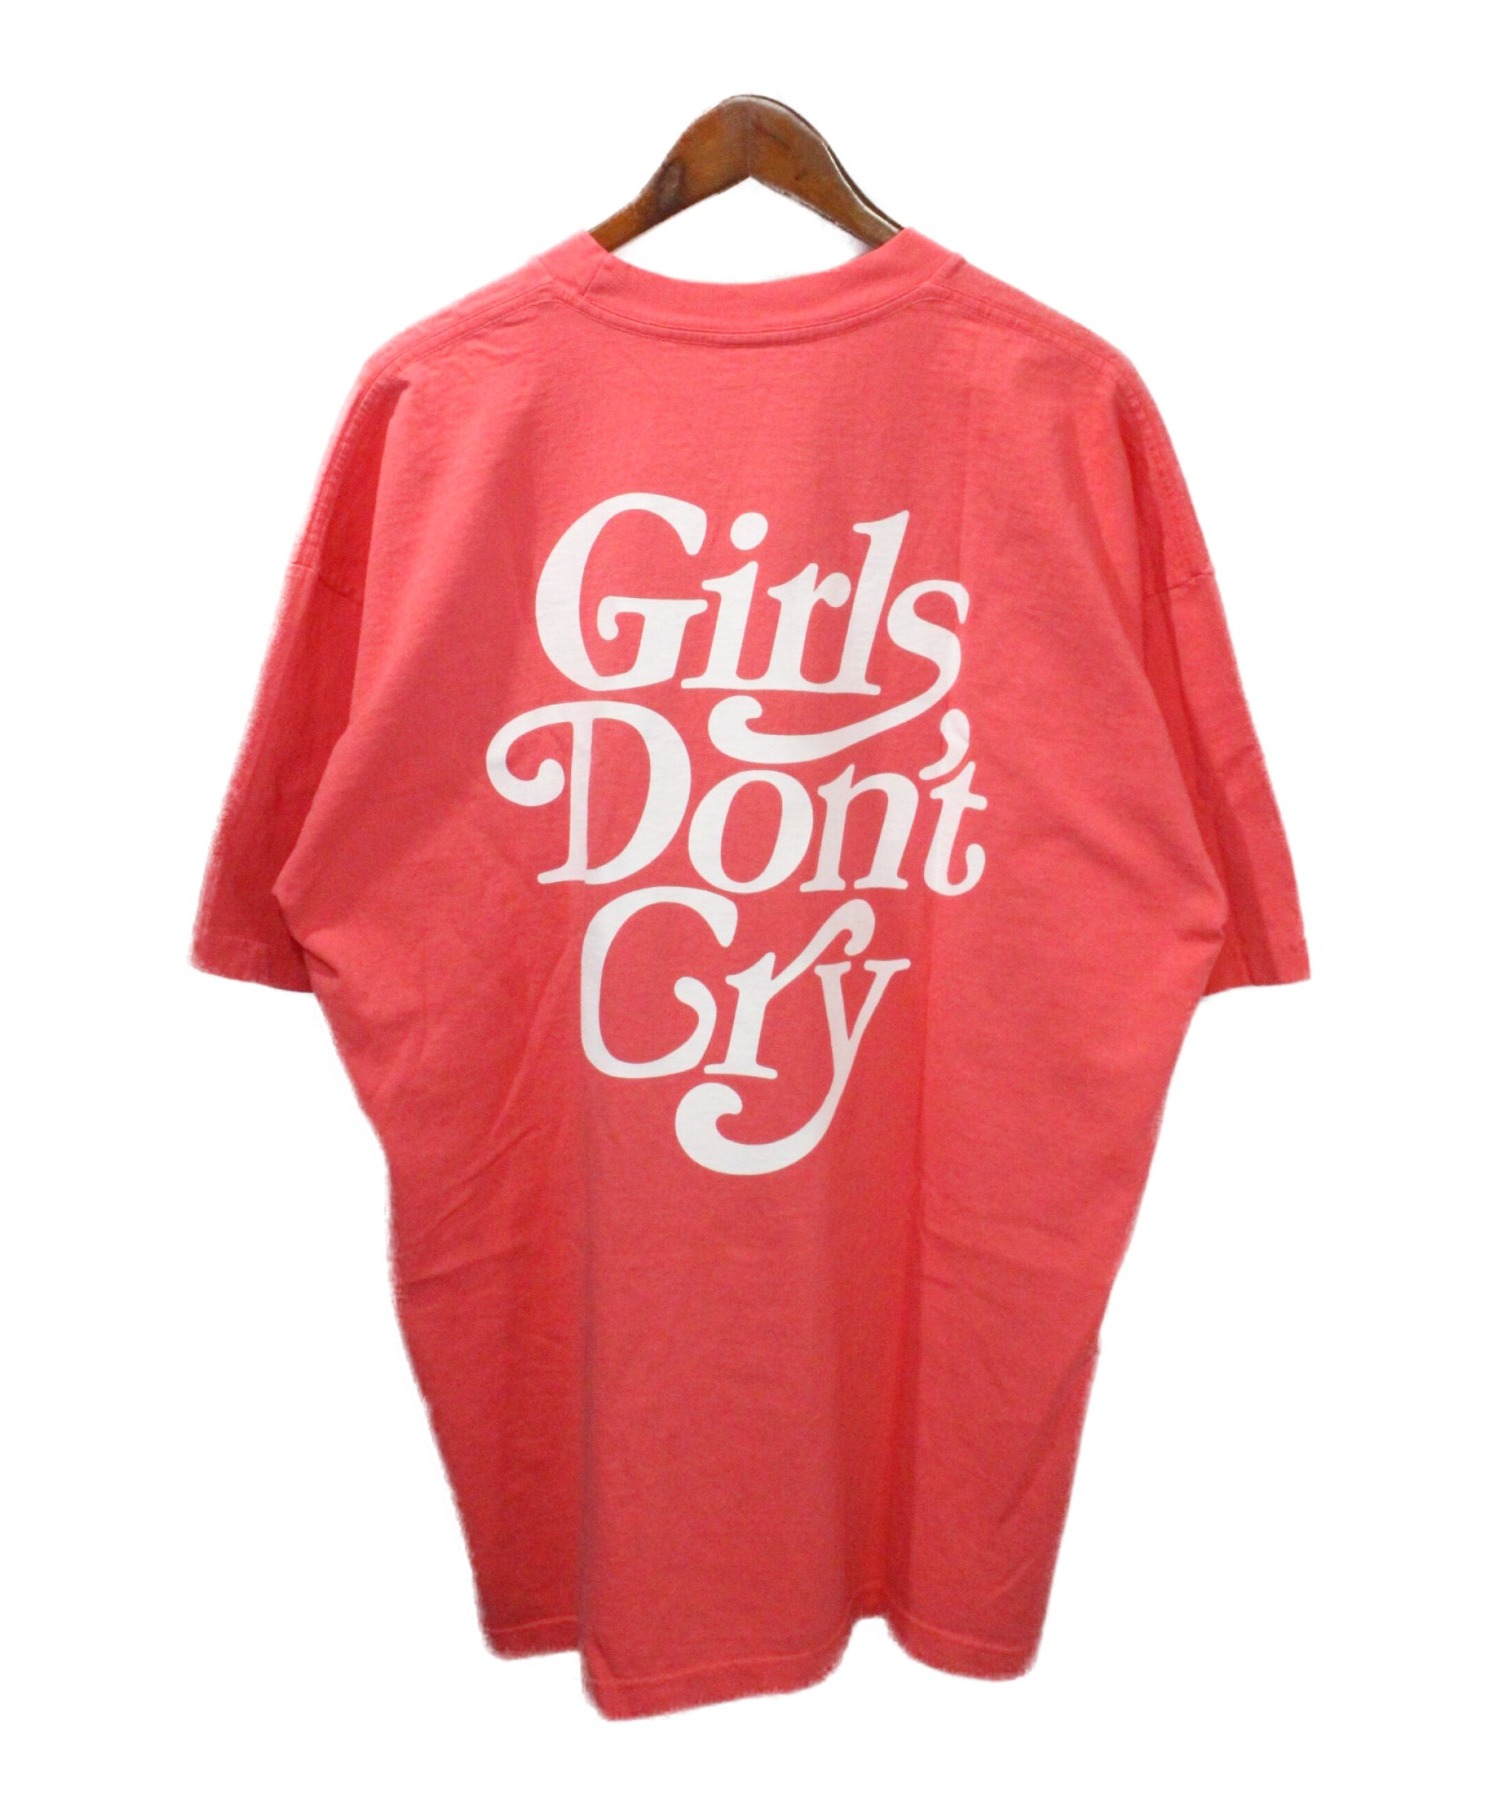 girls don't cry TシャツXLサイズ